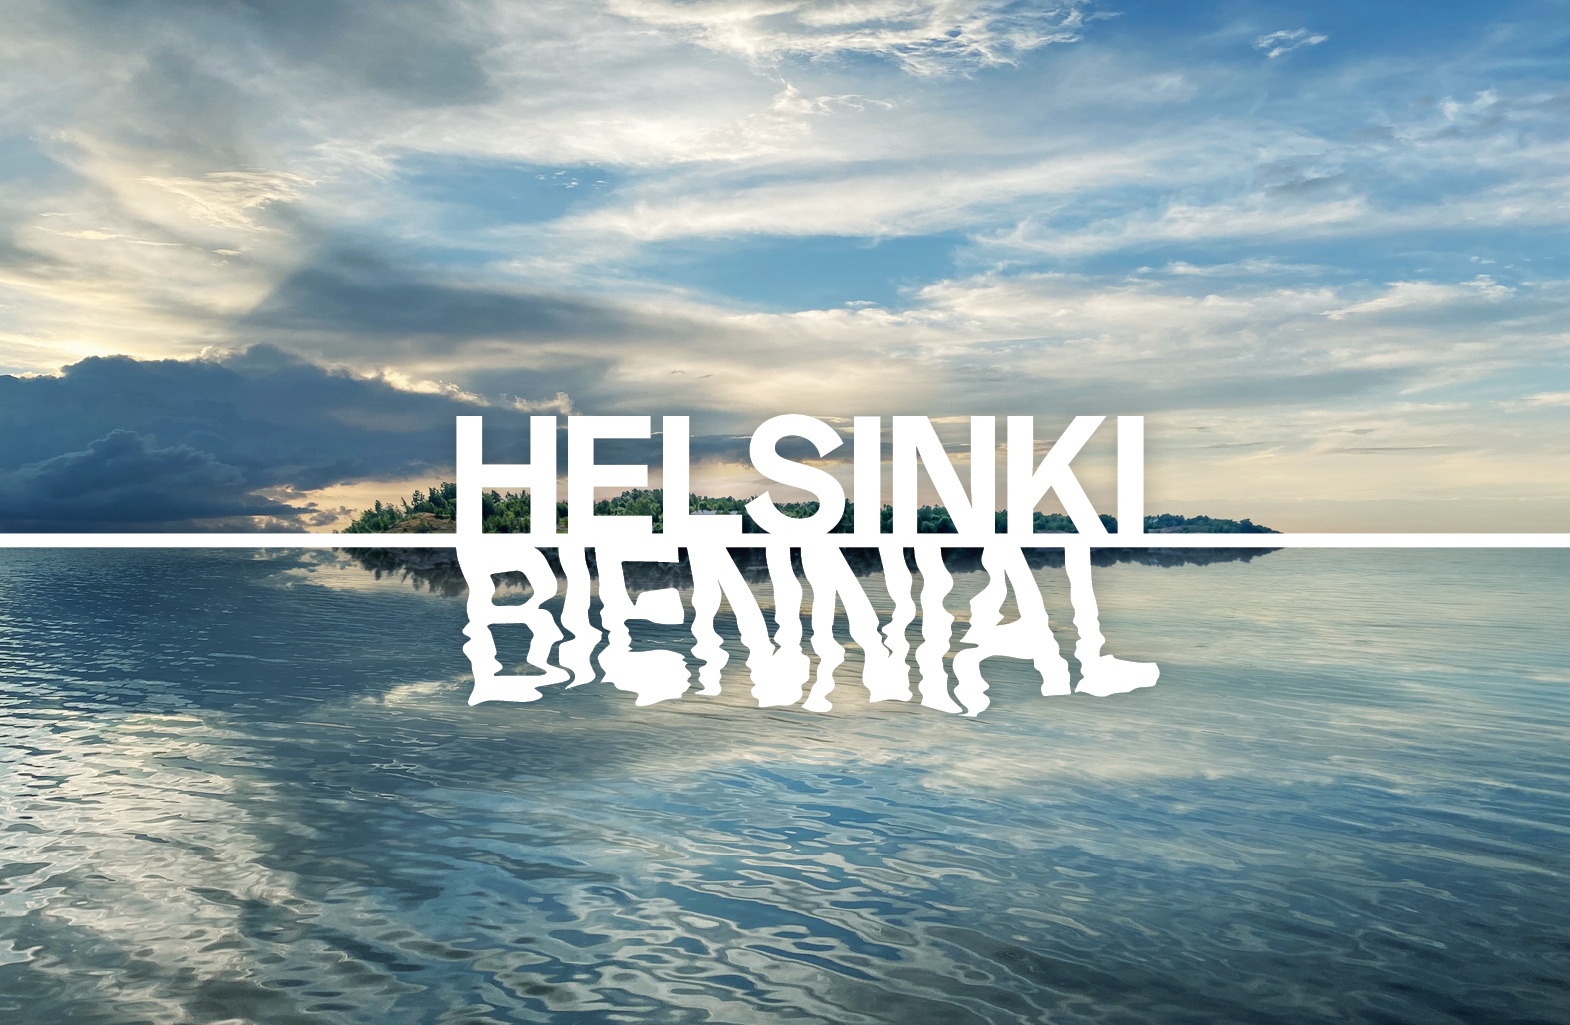 Вторая Хельсинкская биеннале объявила название и первых участников